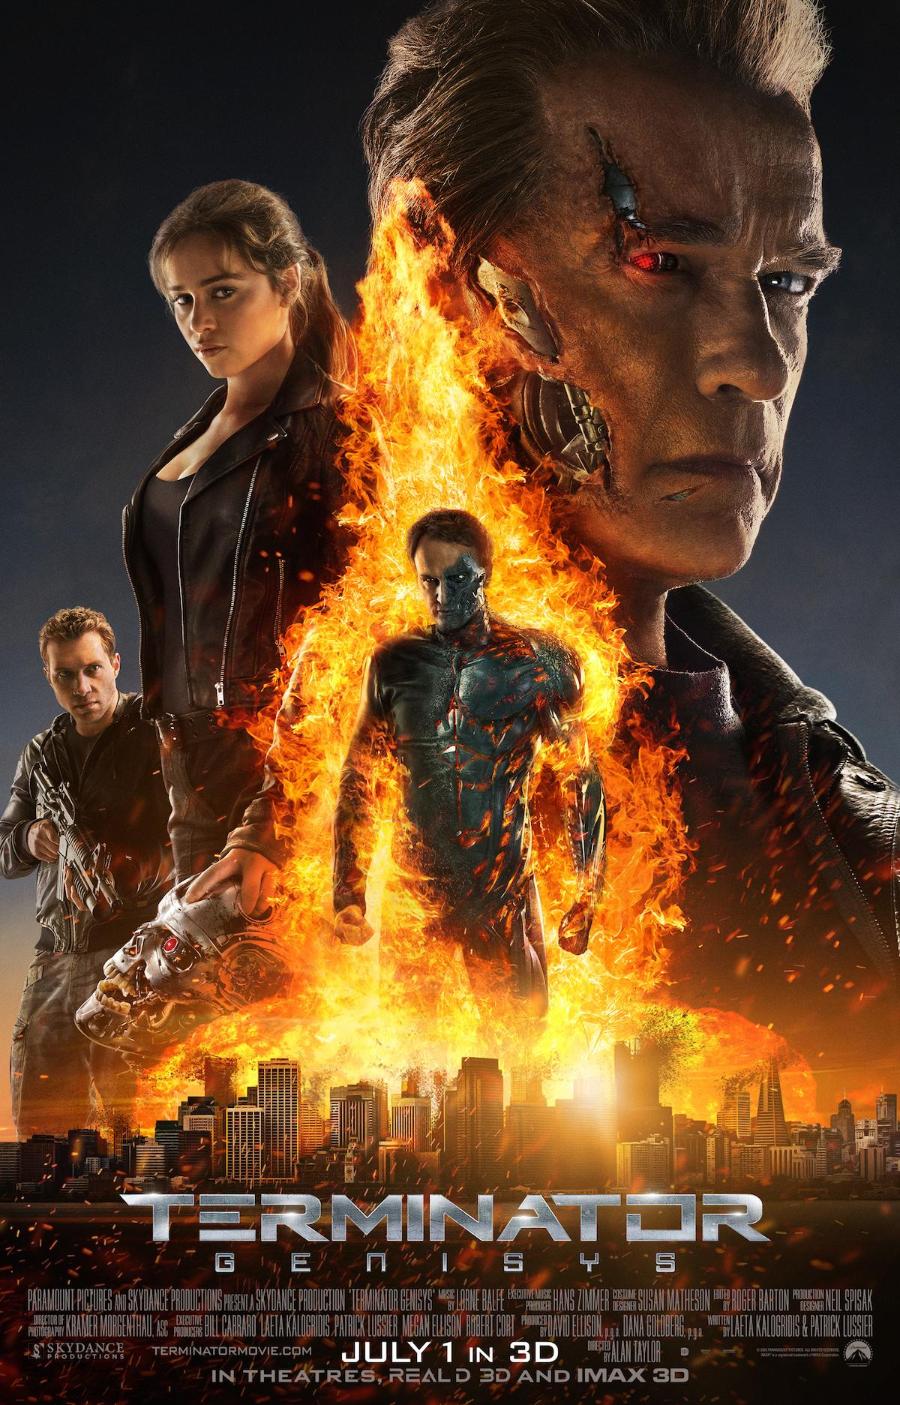 Terminator_Genisys-Arnold_Schwarzenegger-Emilia_Clarke-Poster